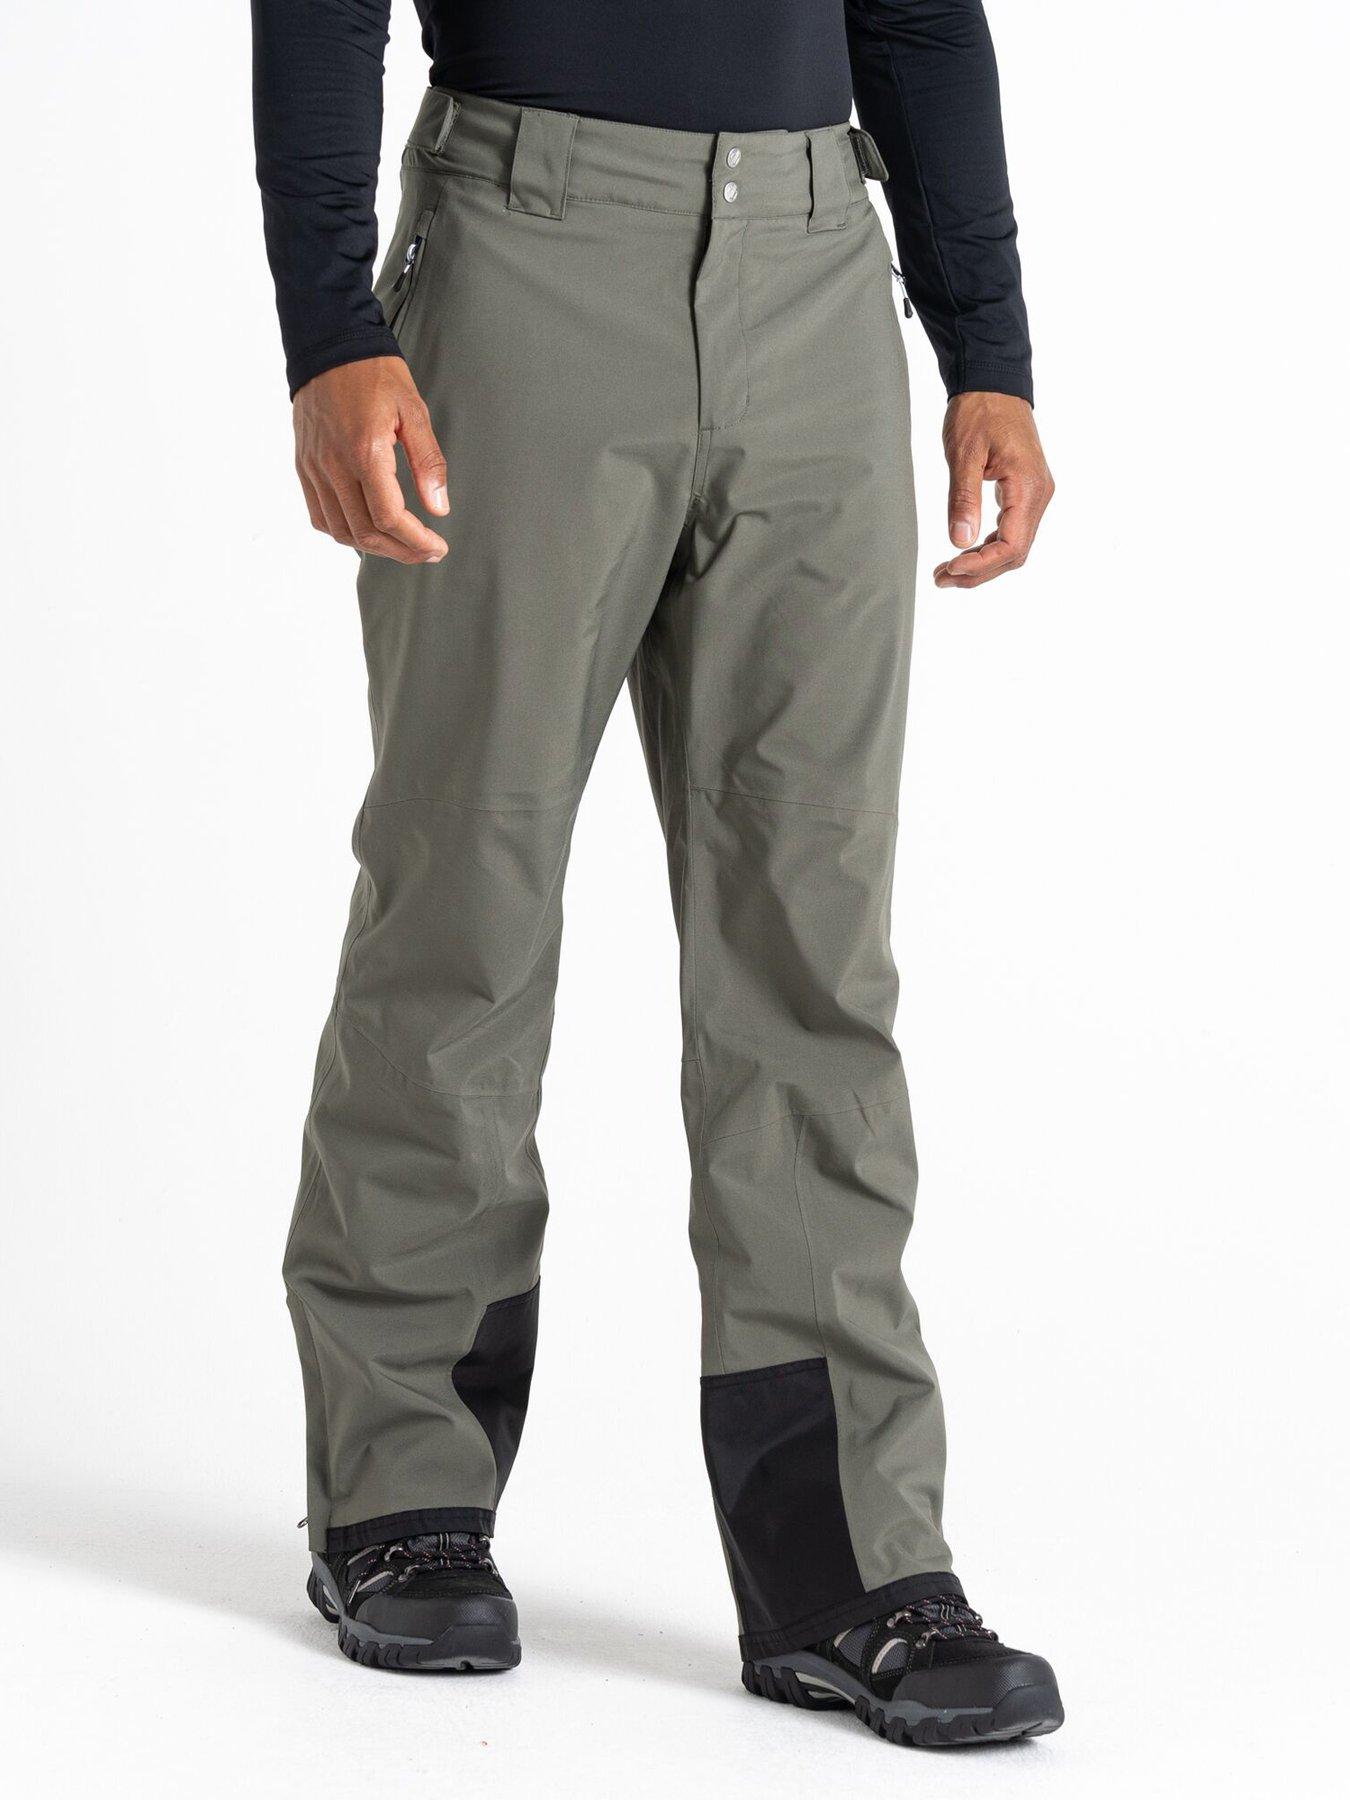 Dare 2b Sleek Full Length Waterproof Ski Pants - Black